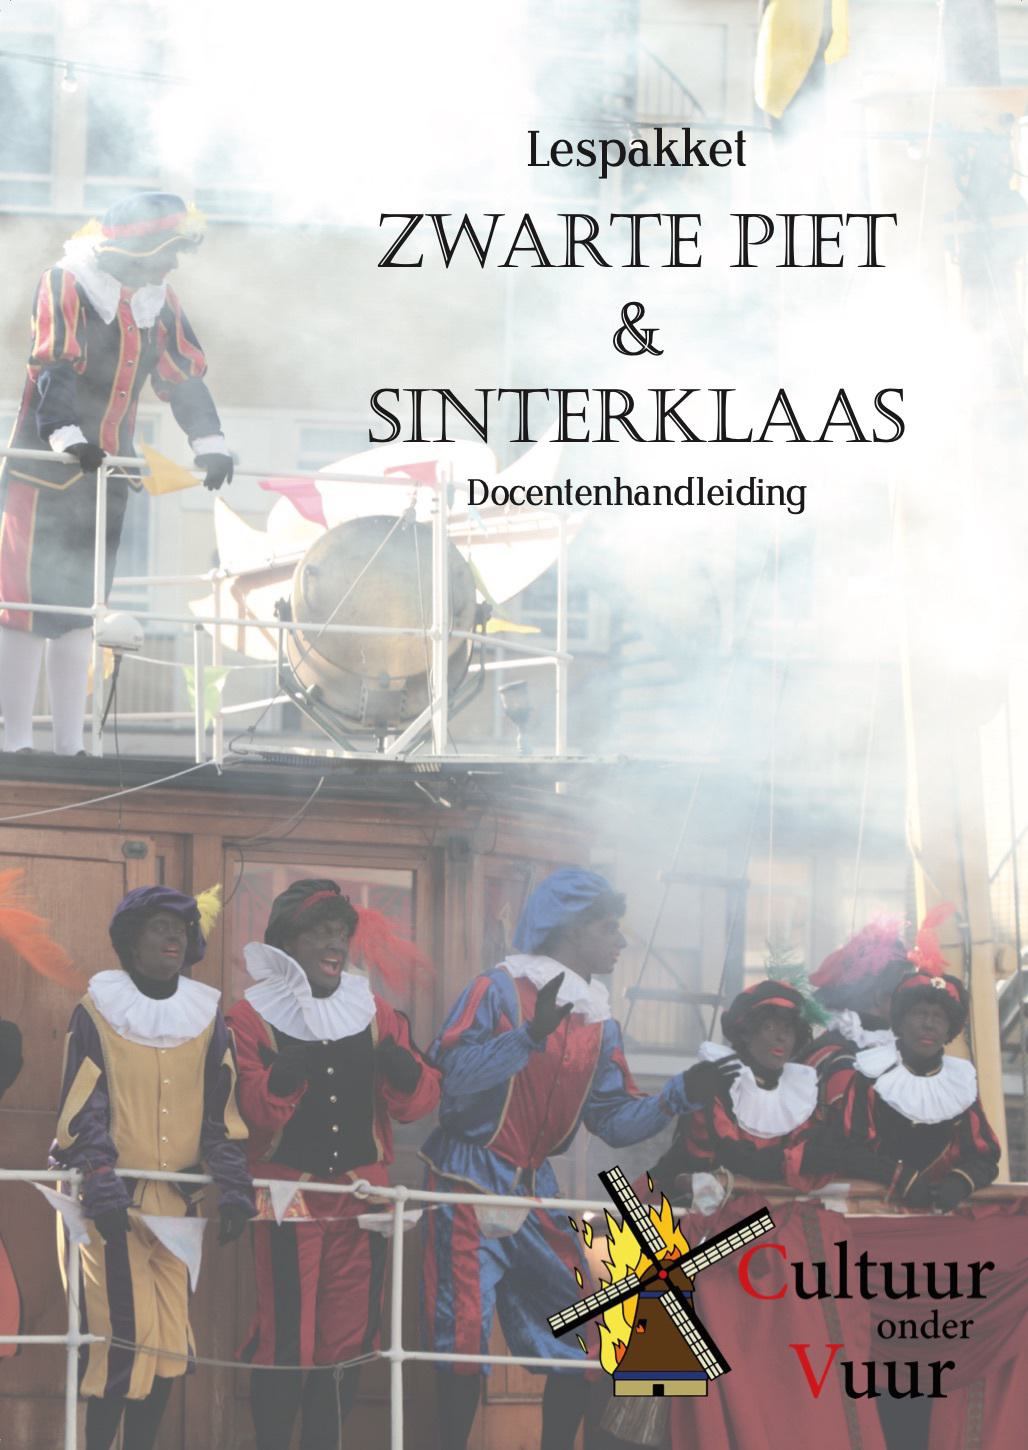 Interview over lespakket: 'Wij willen de echte en authentieke Zwarte Piet'